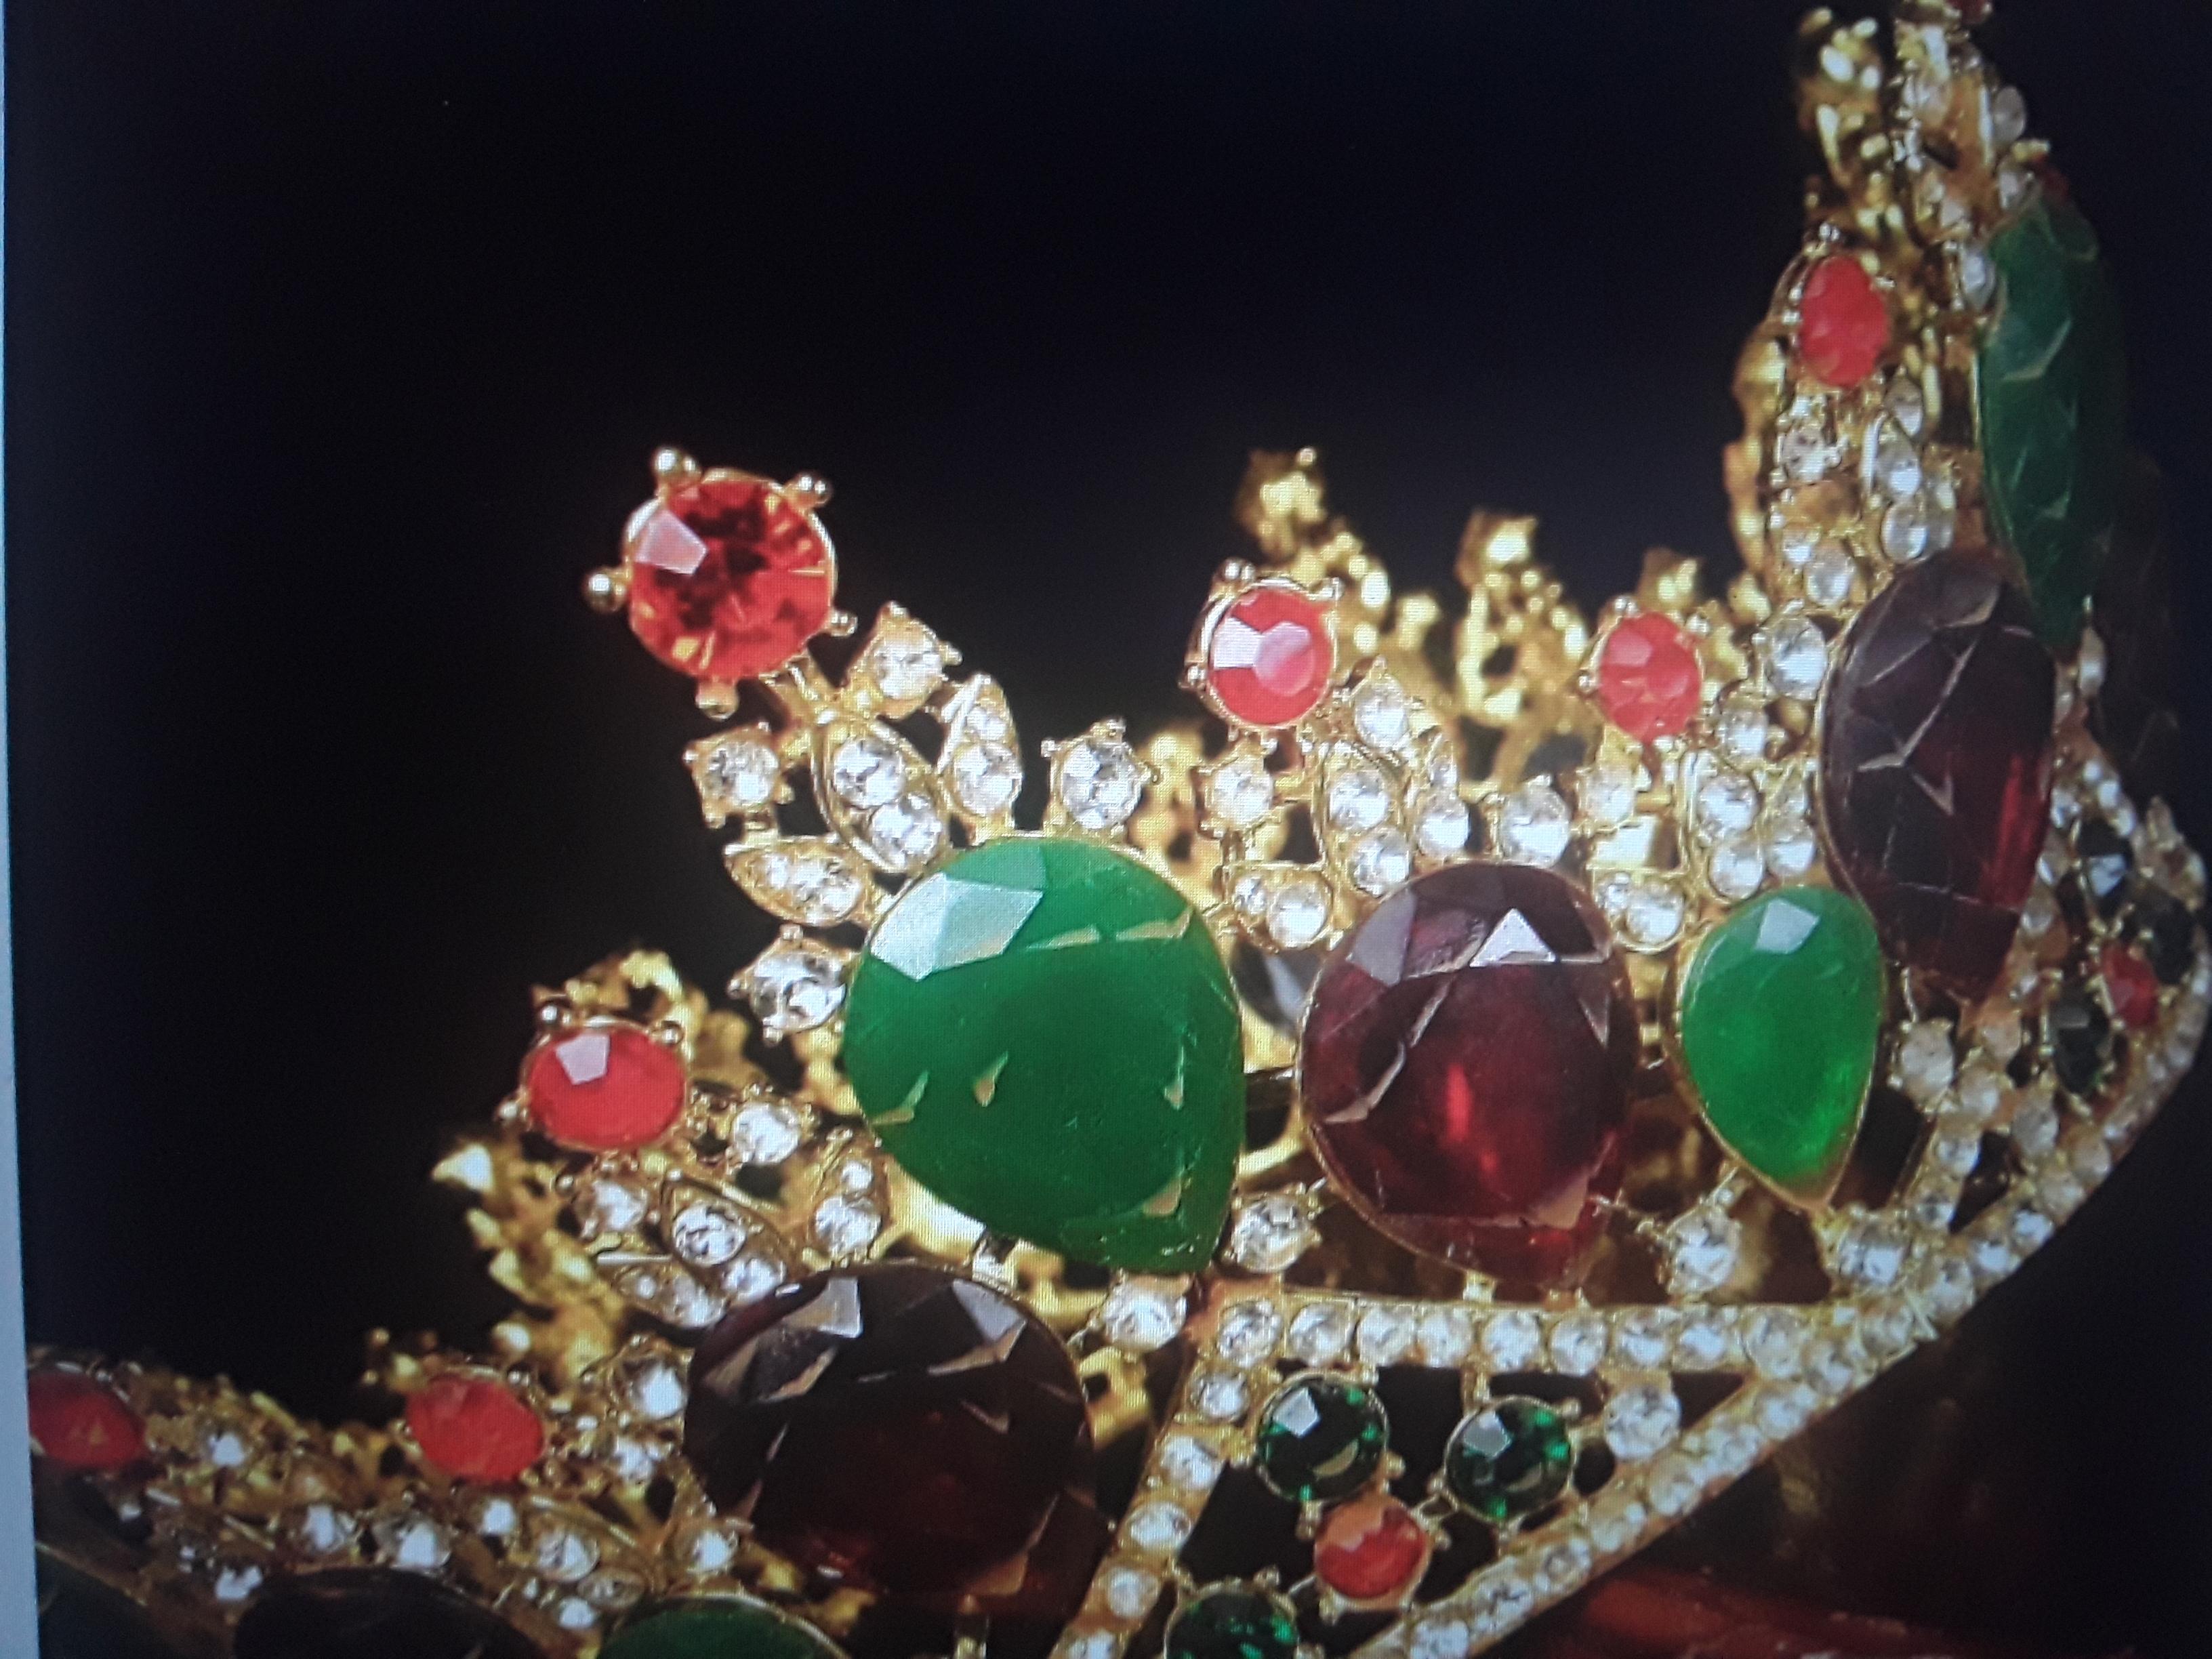 Diadème royal antique en bronze doré et orné de bijoux verts et rouges. Incrustés de Jewell. Histoire britannique. c1900. Pièce très intéressante que je me devais d'avoir.